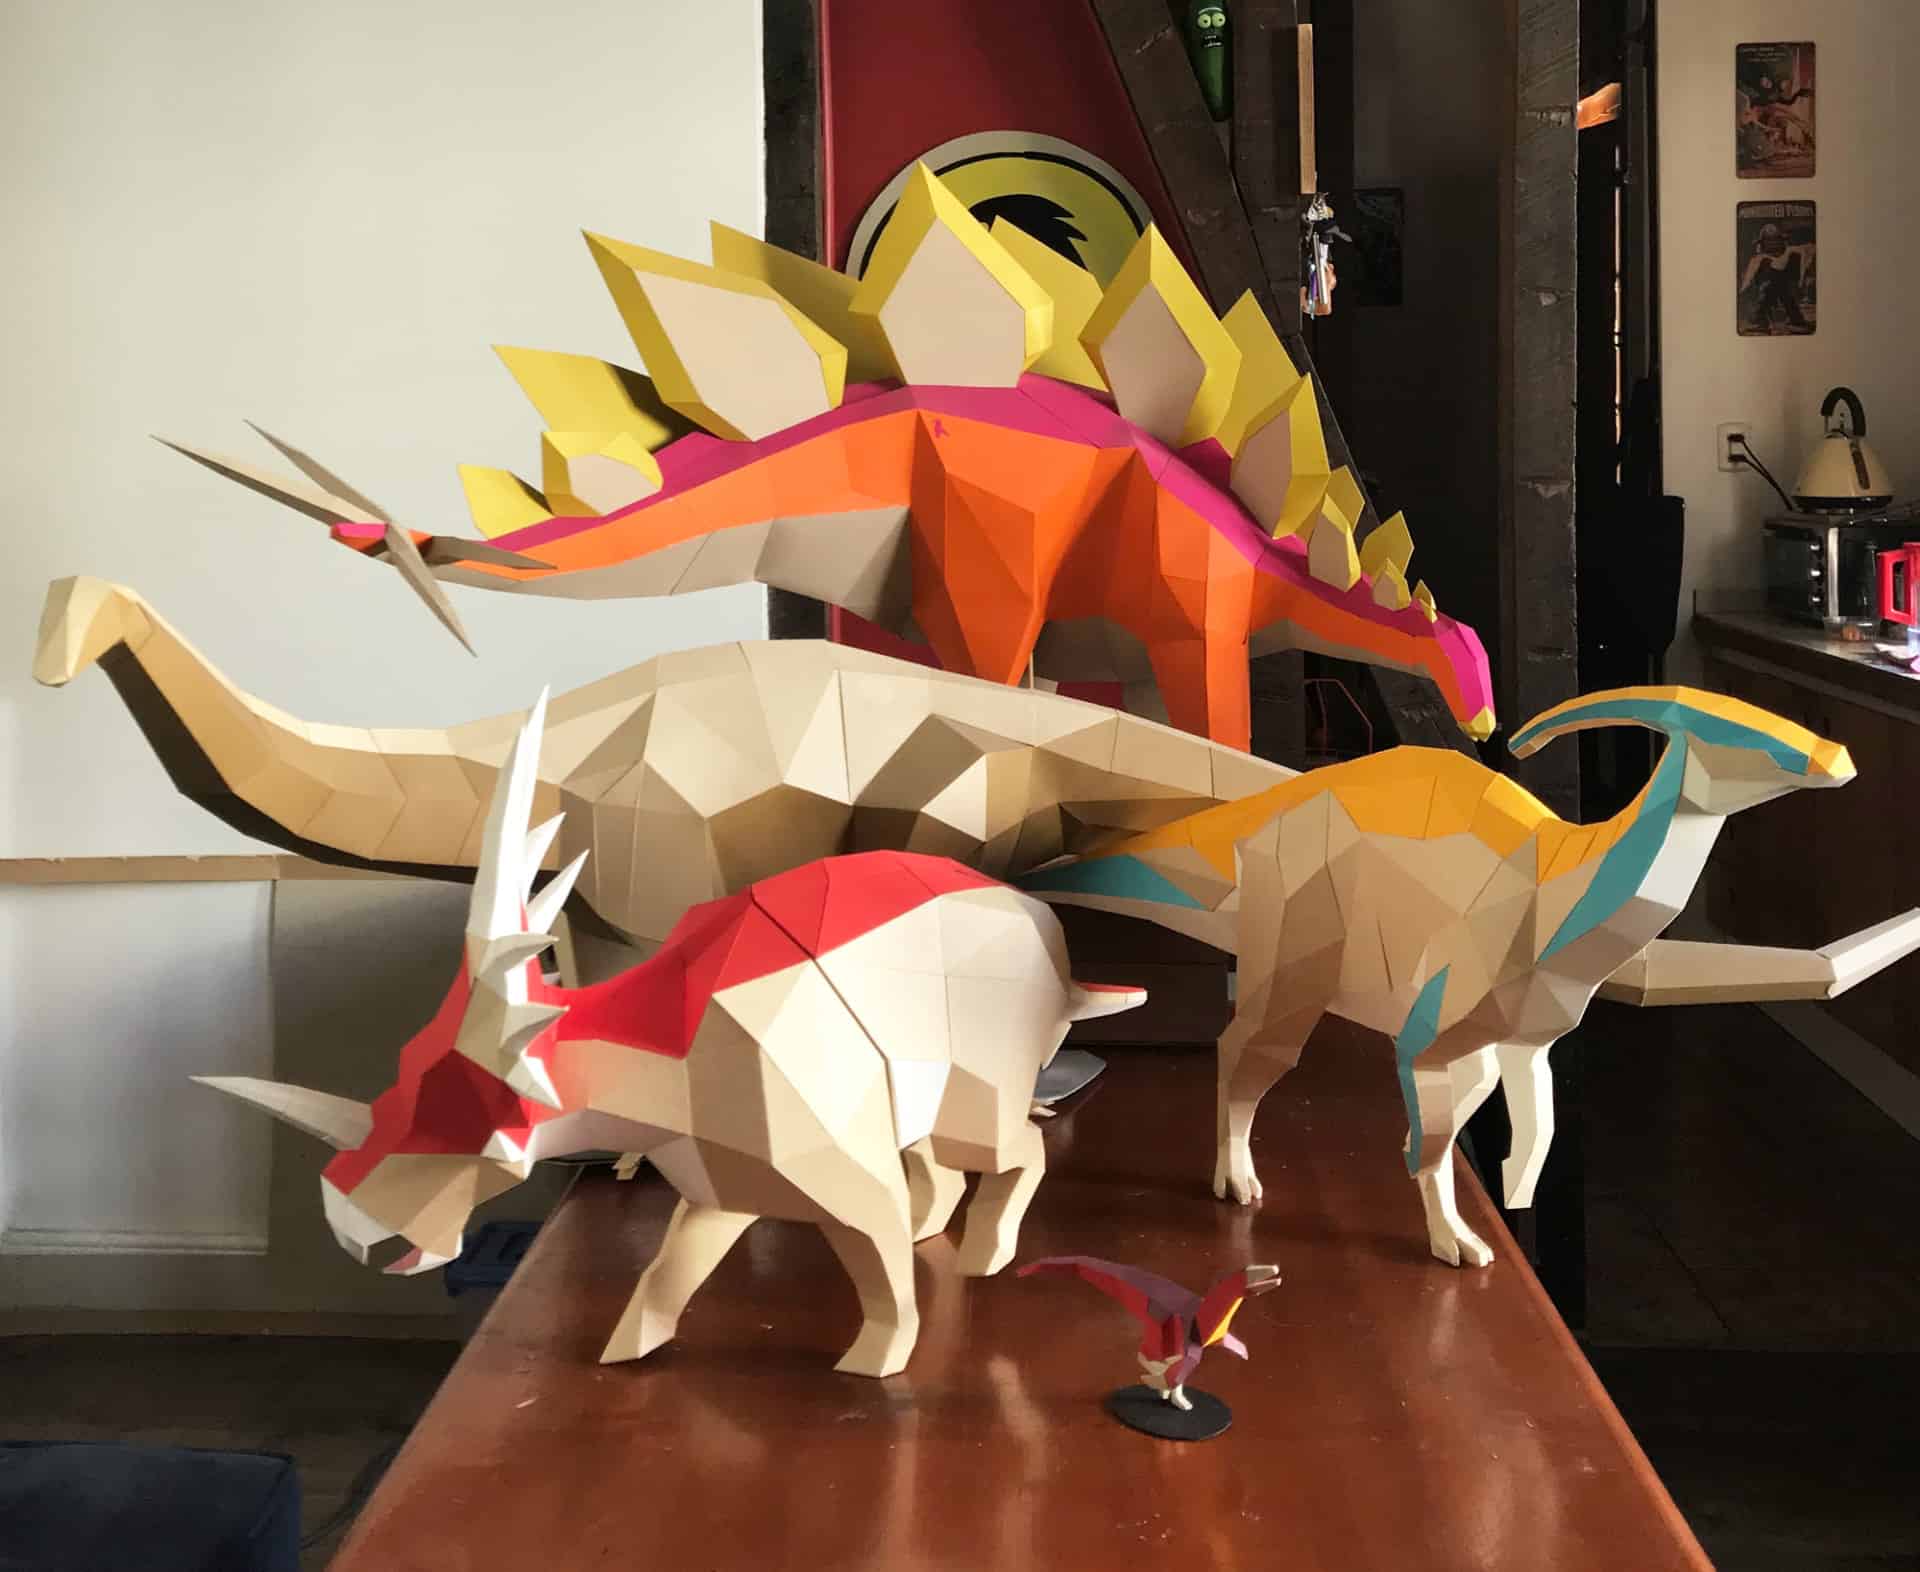 Seba Naranjo Designs And Builds 3D Handcut Paper Models Of Dinosaurs